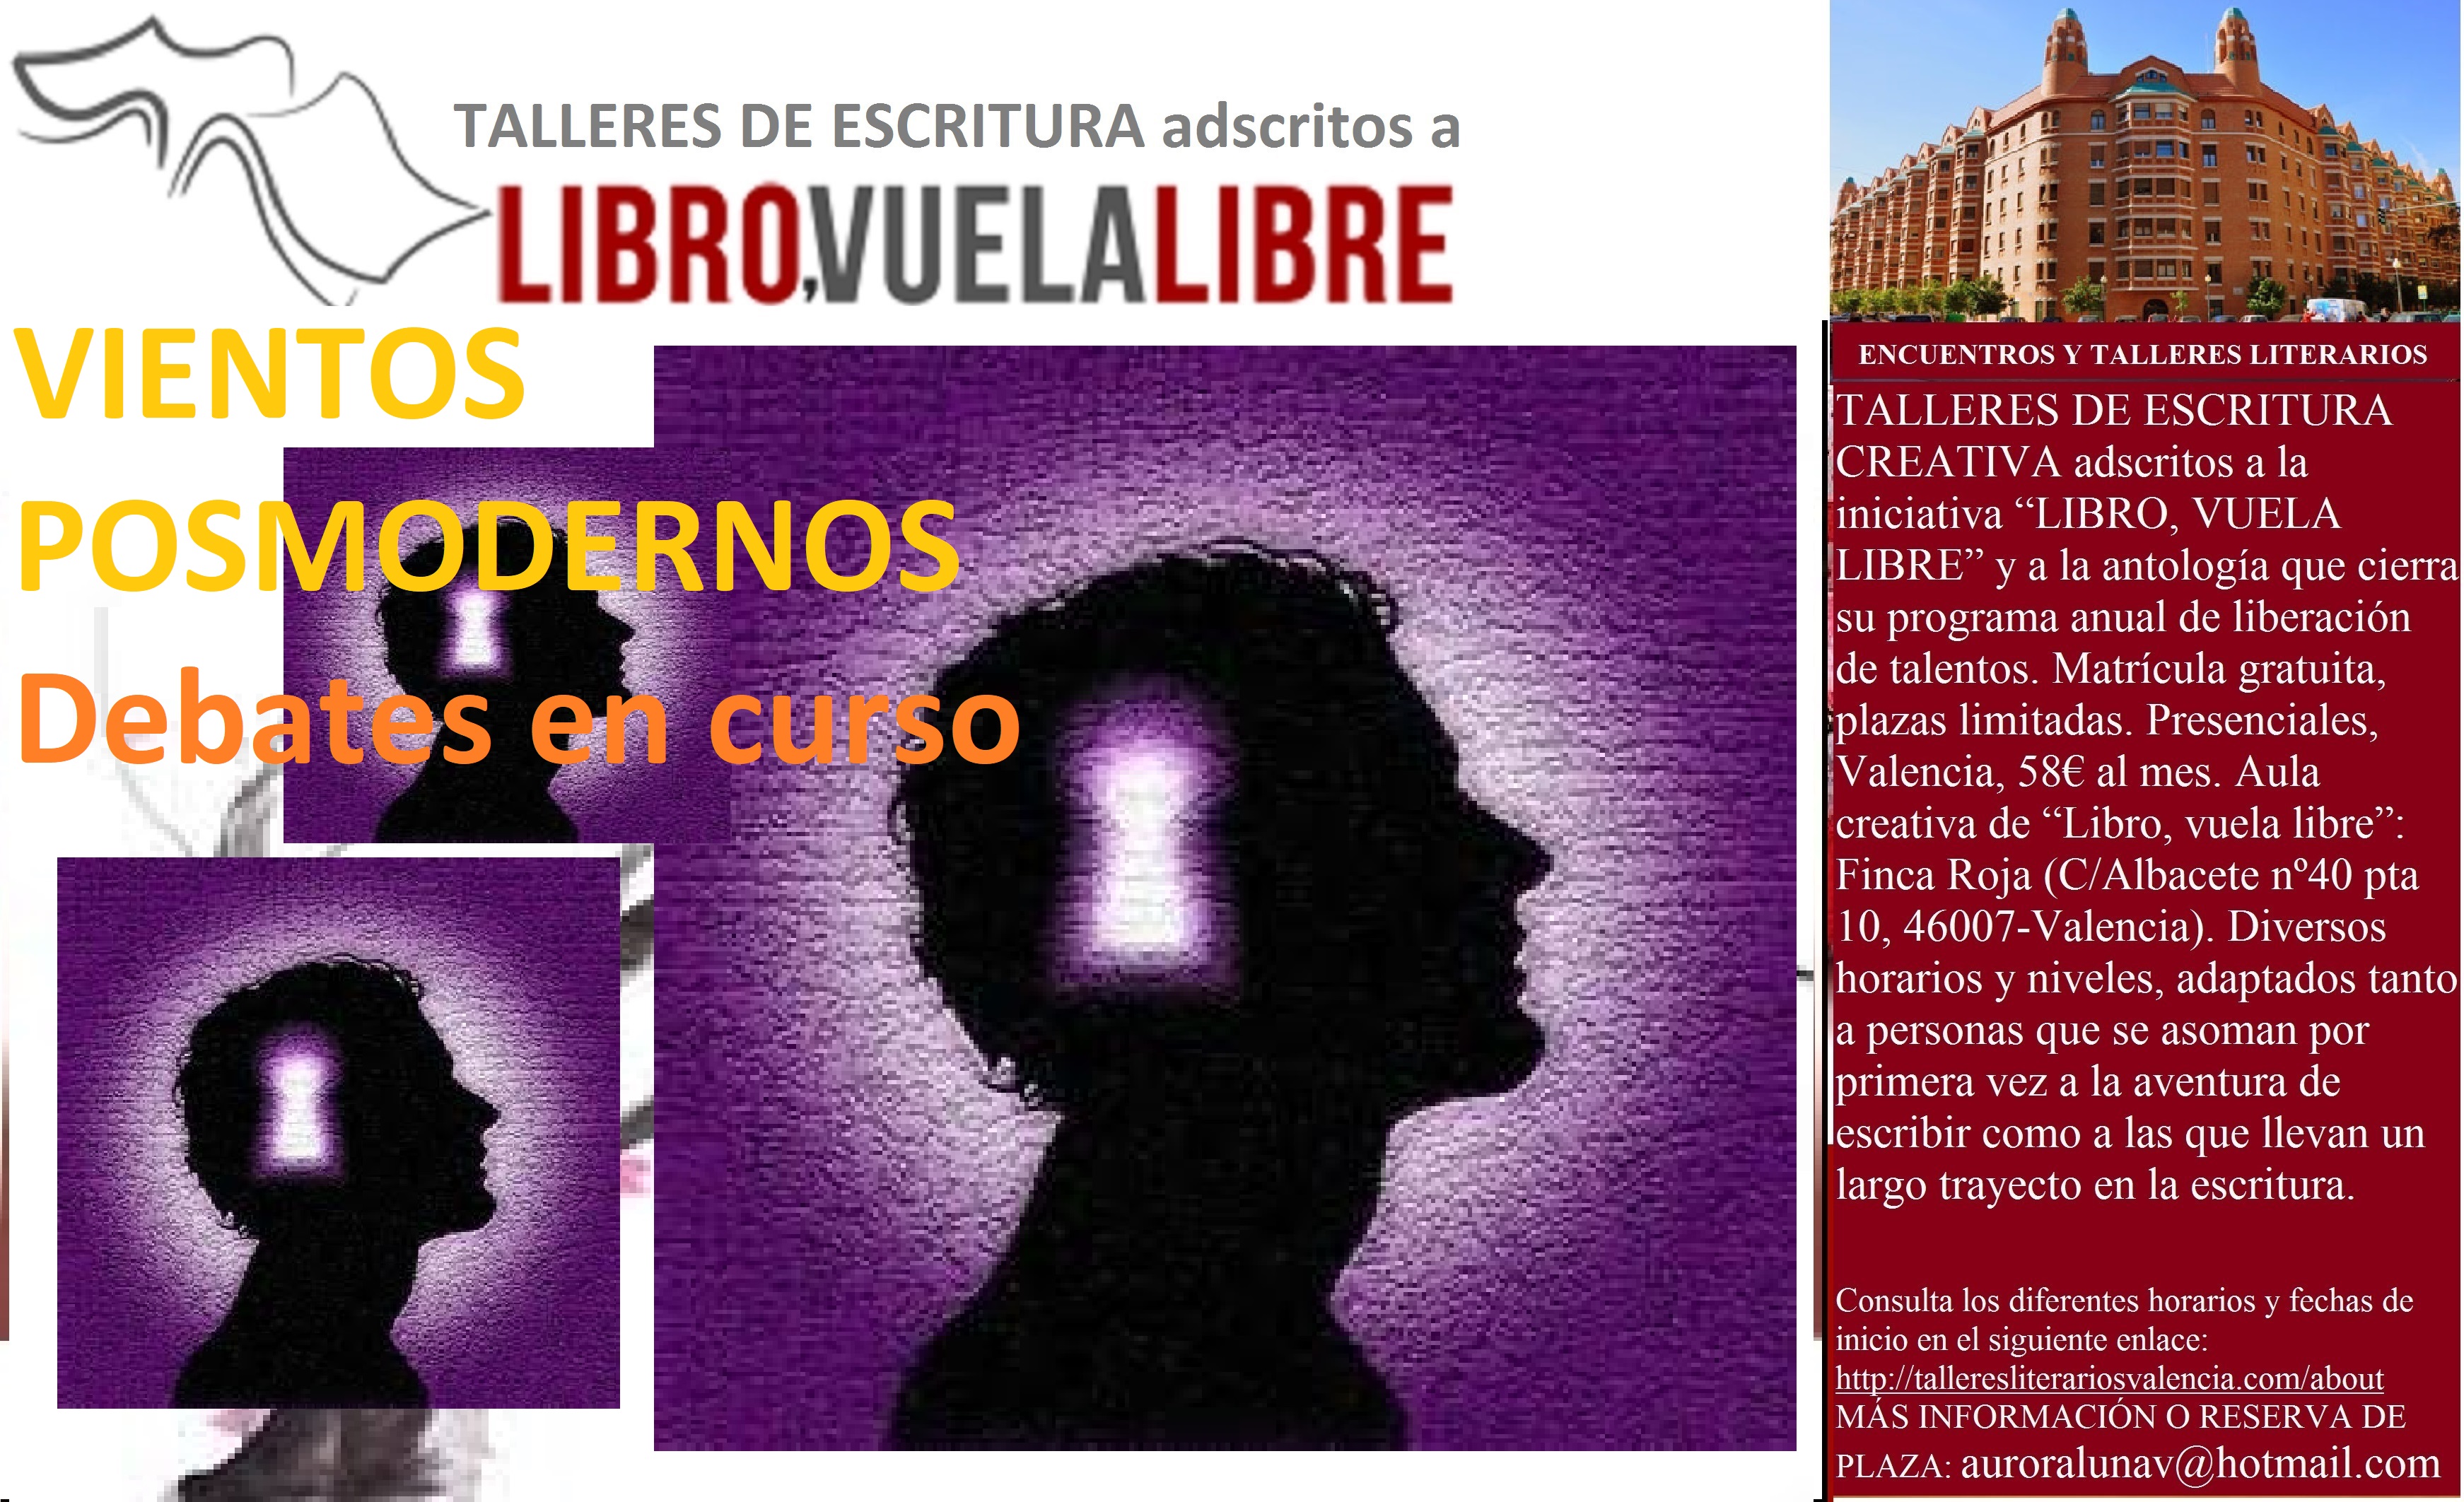 Debates y reflexiones en curso en el taller de escritura creativa de LIBRO, VUELA LIBRE en Valencia